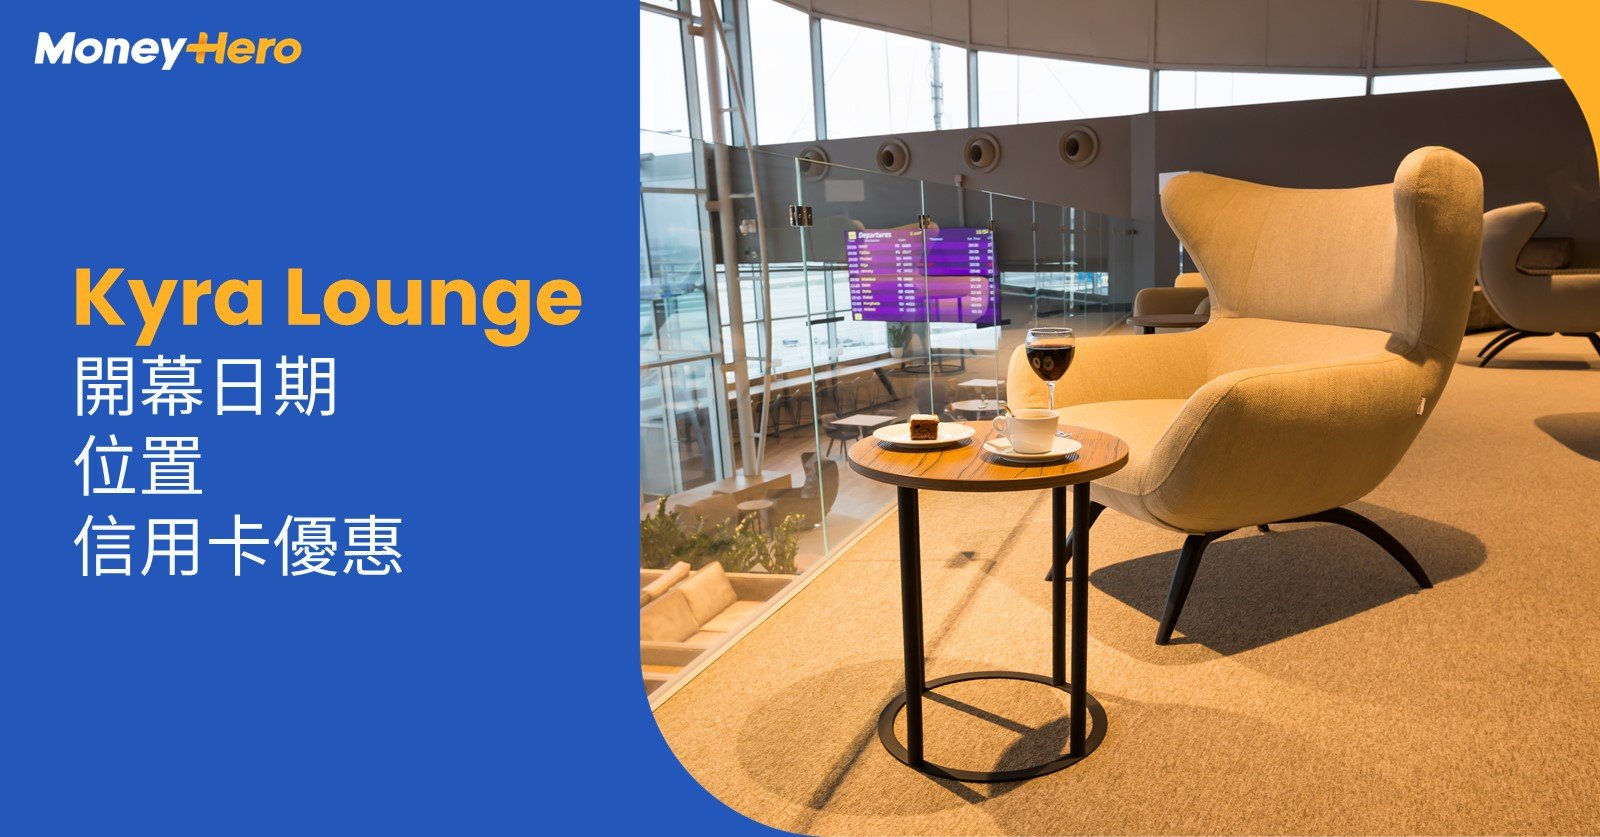 Kyra-Lounge-機場貴賓室